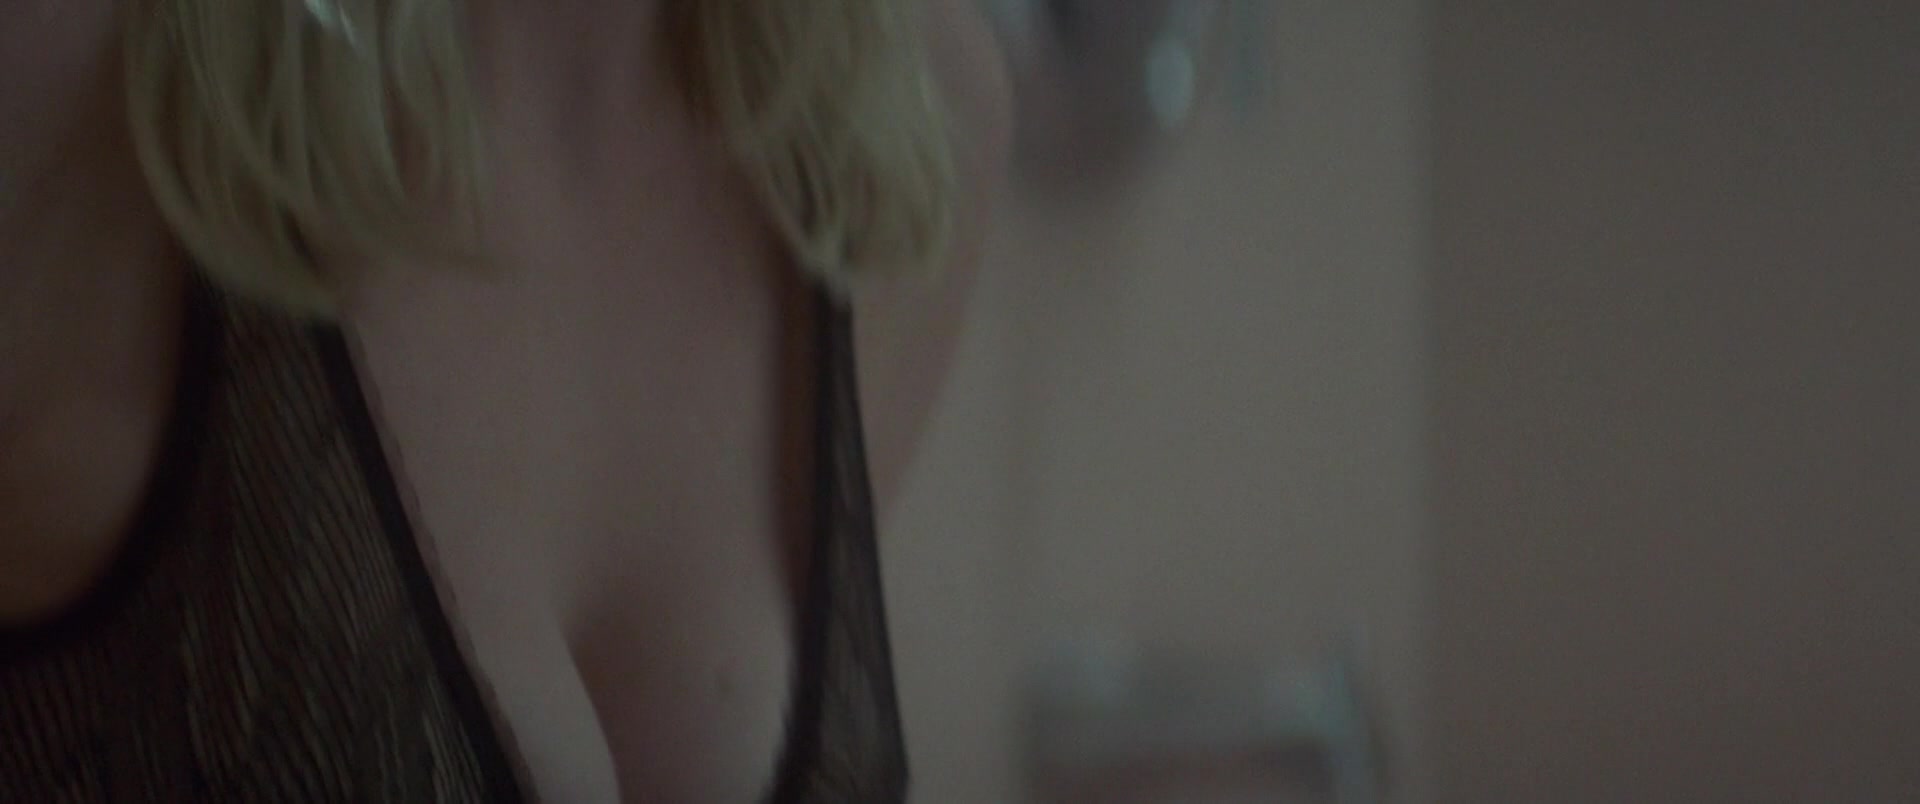 Kirsten Dunst - Woodshock 1080p BluRay 0978.jpg